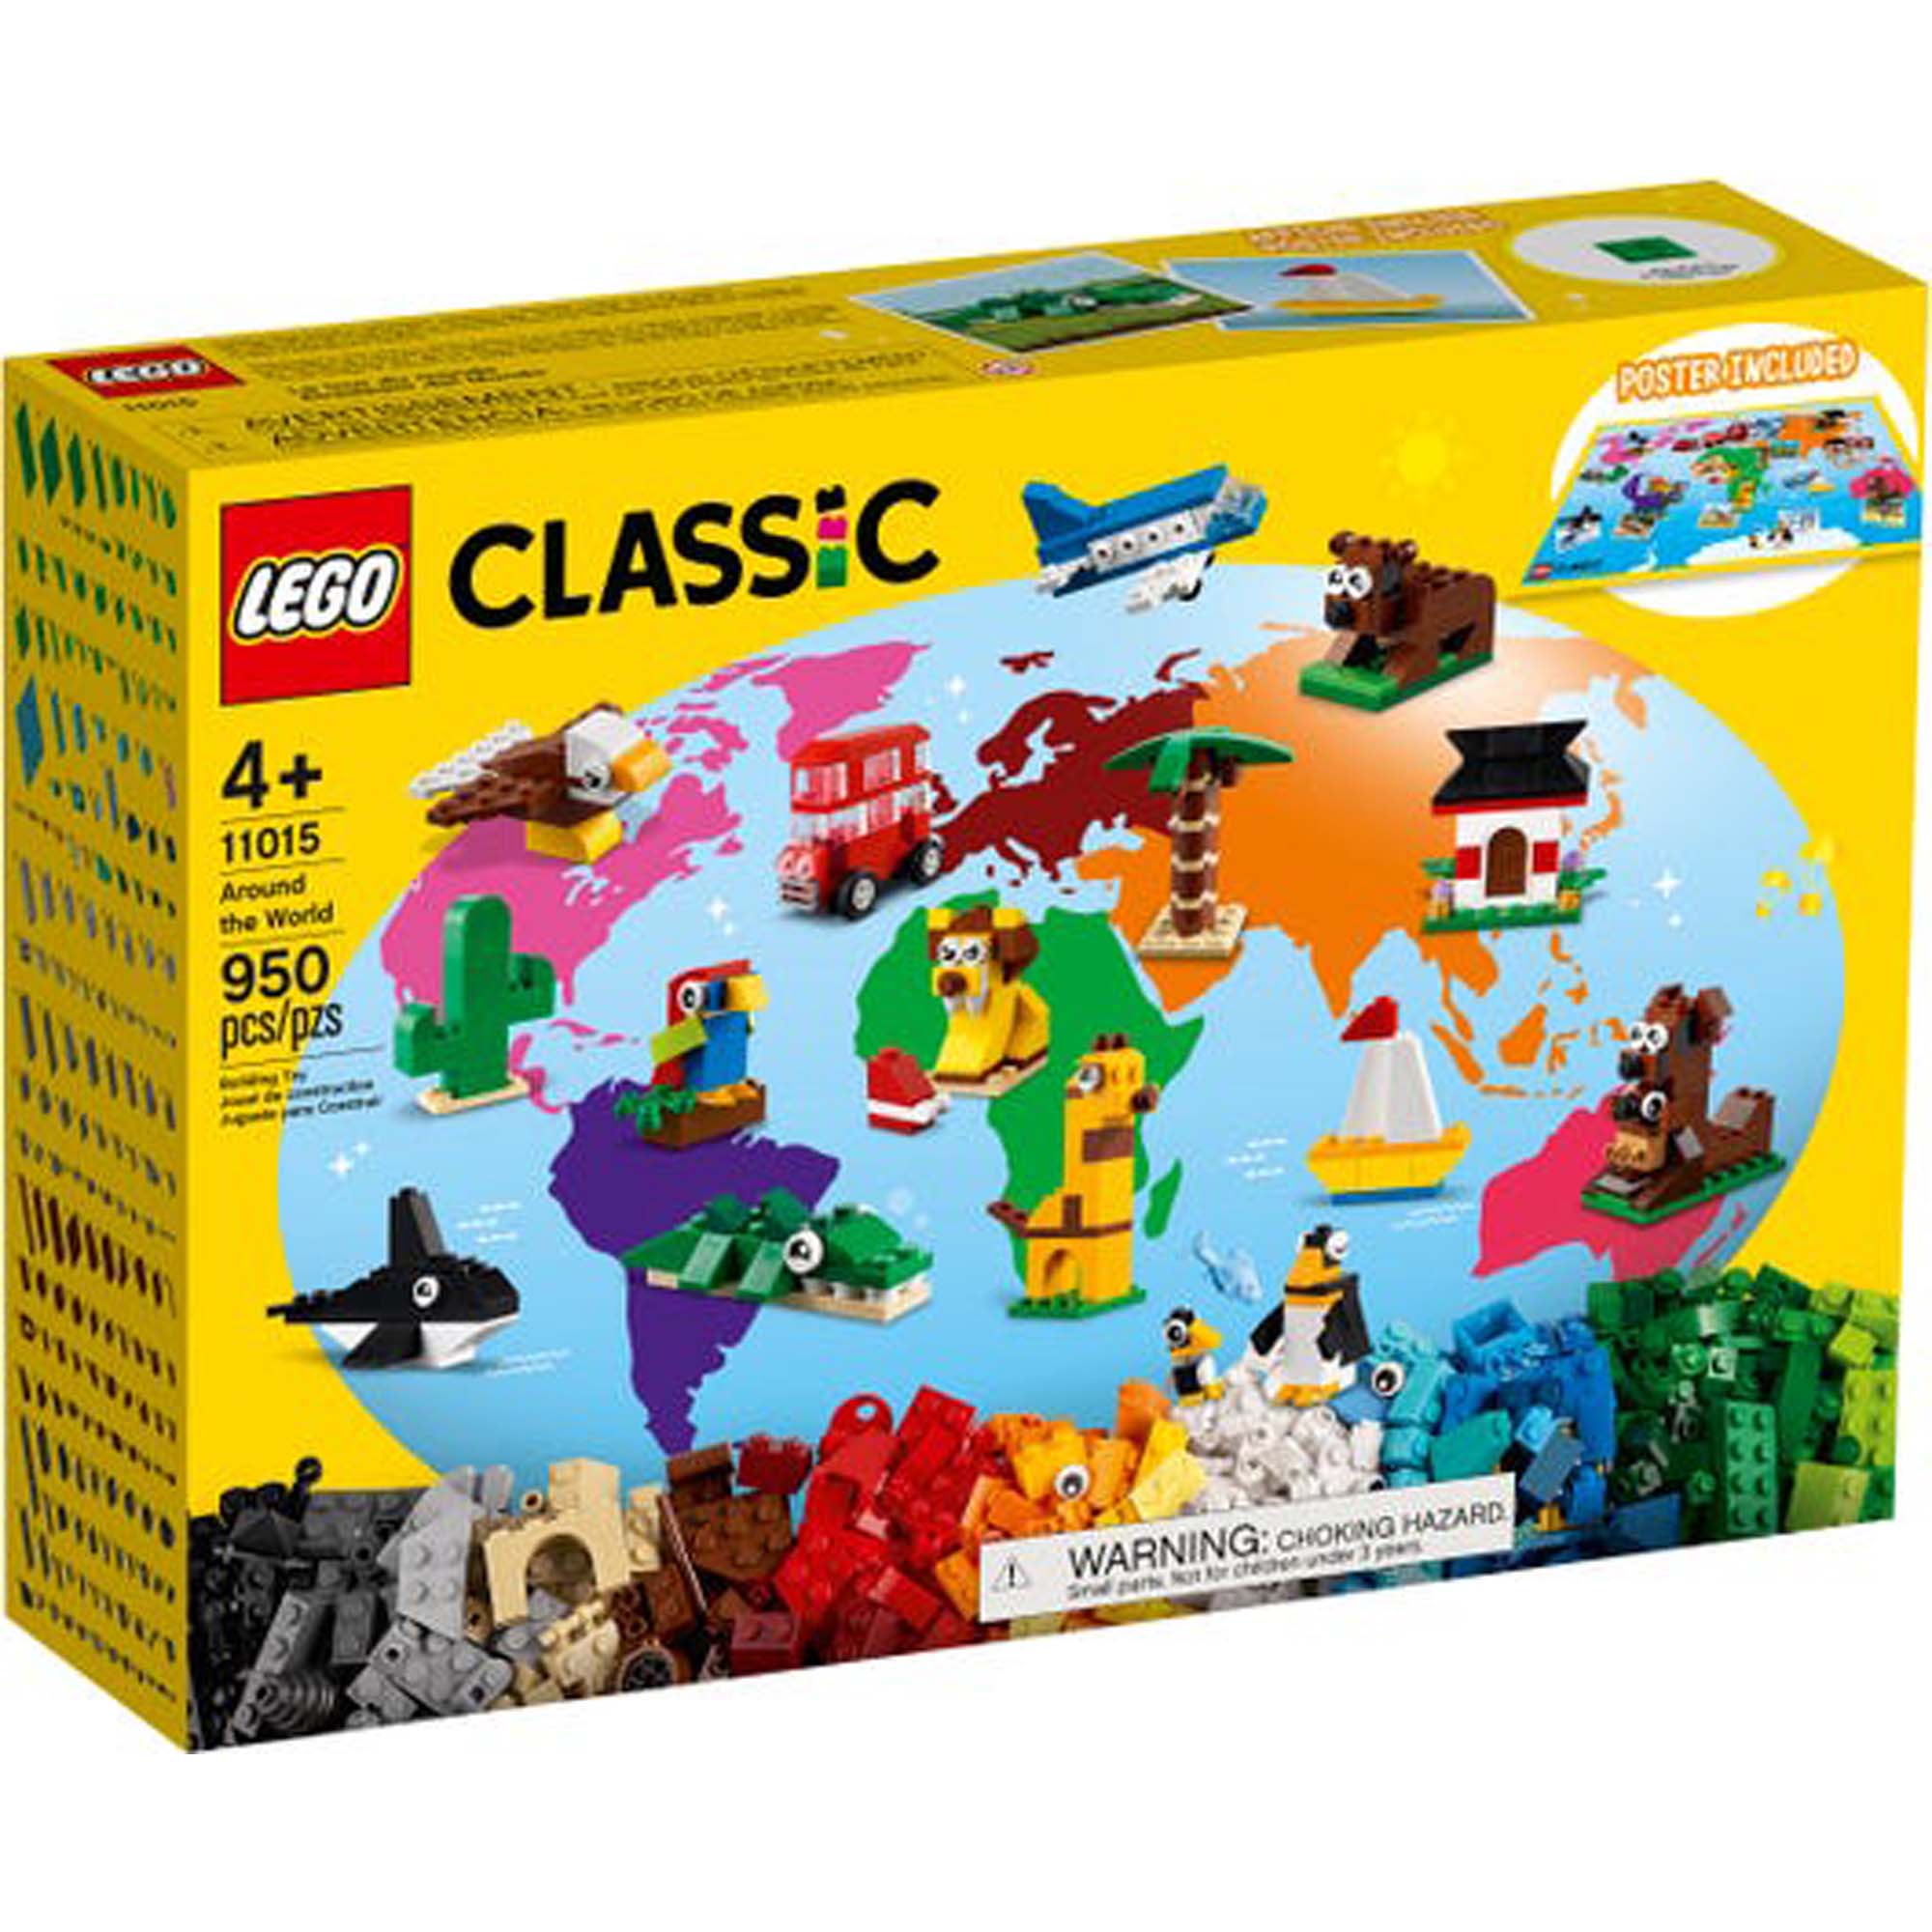 Lego Duplo la construction créative+1/2ans – Orca